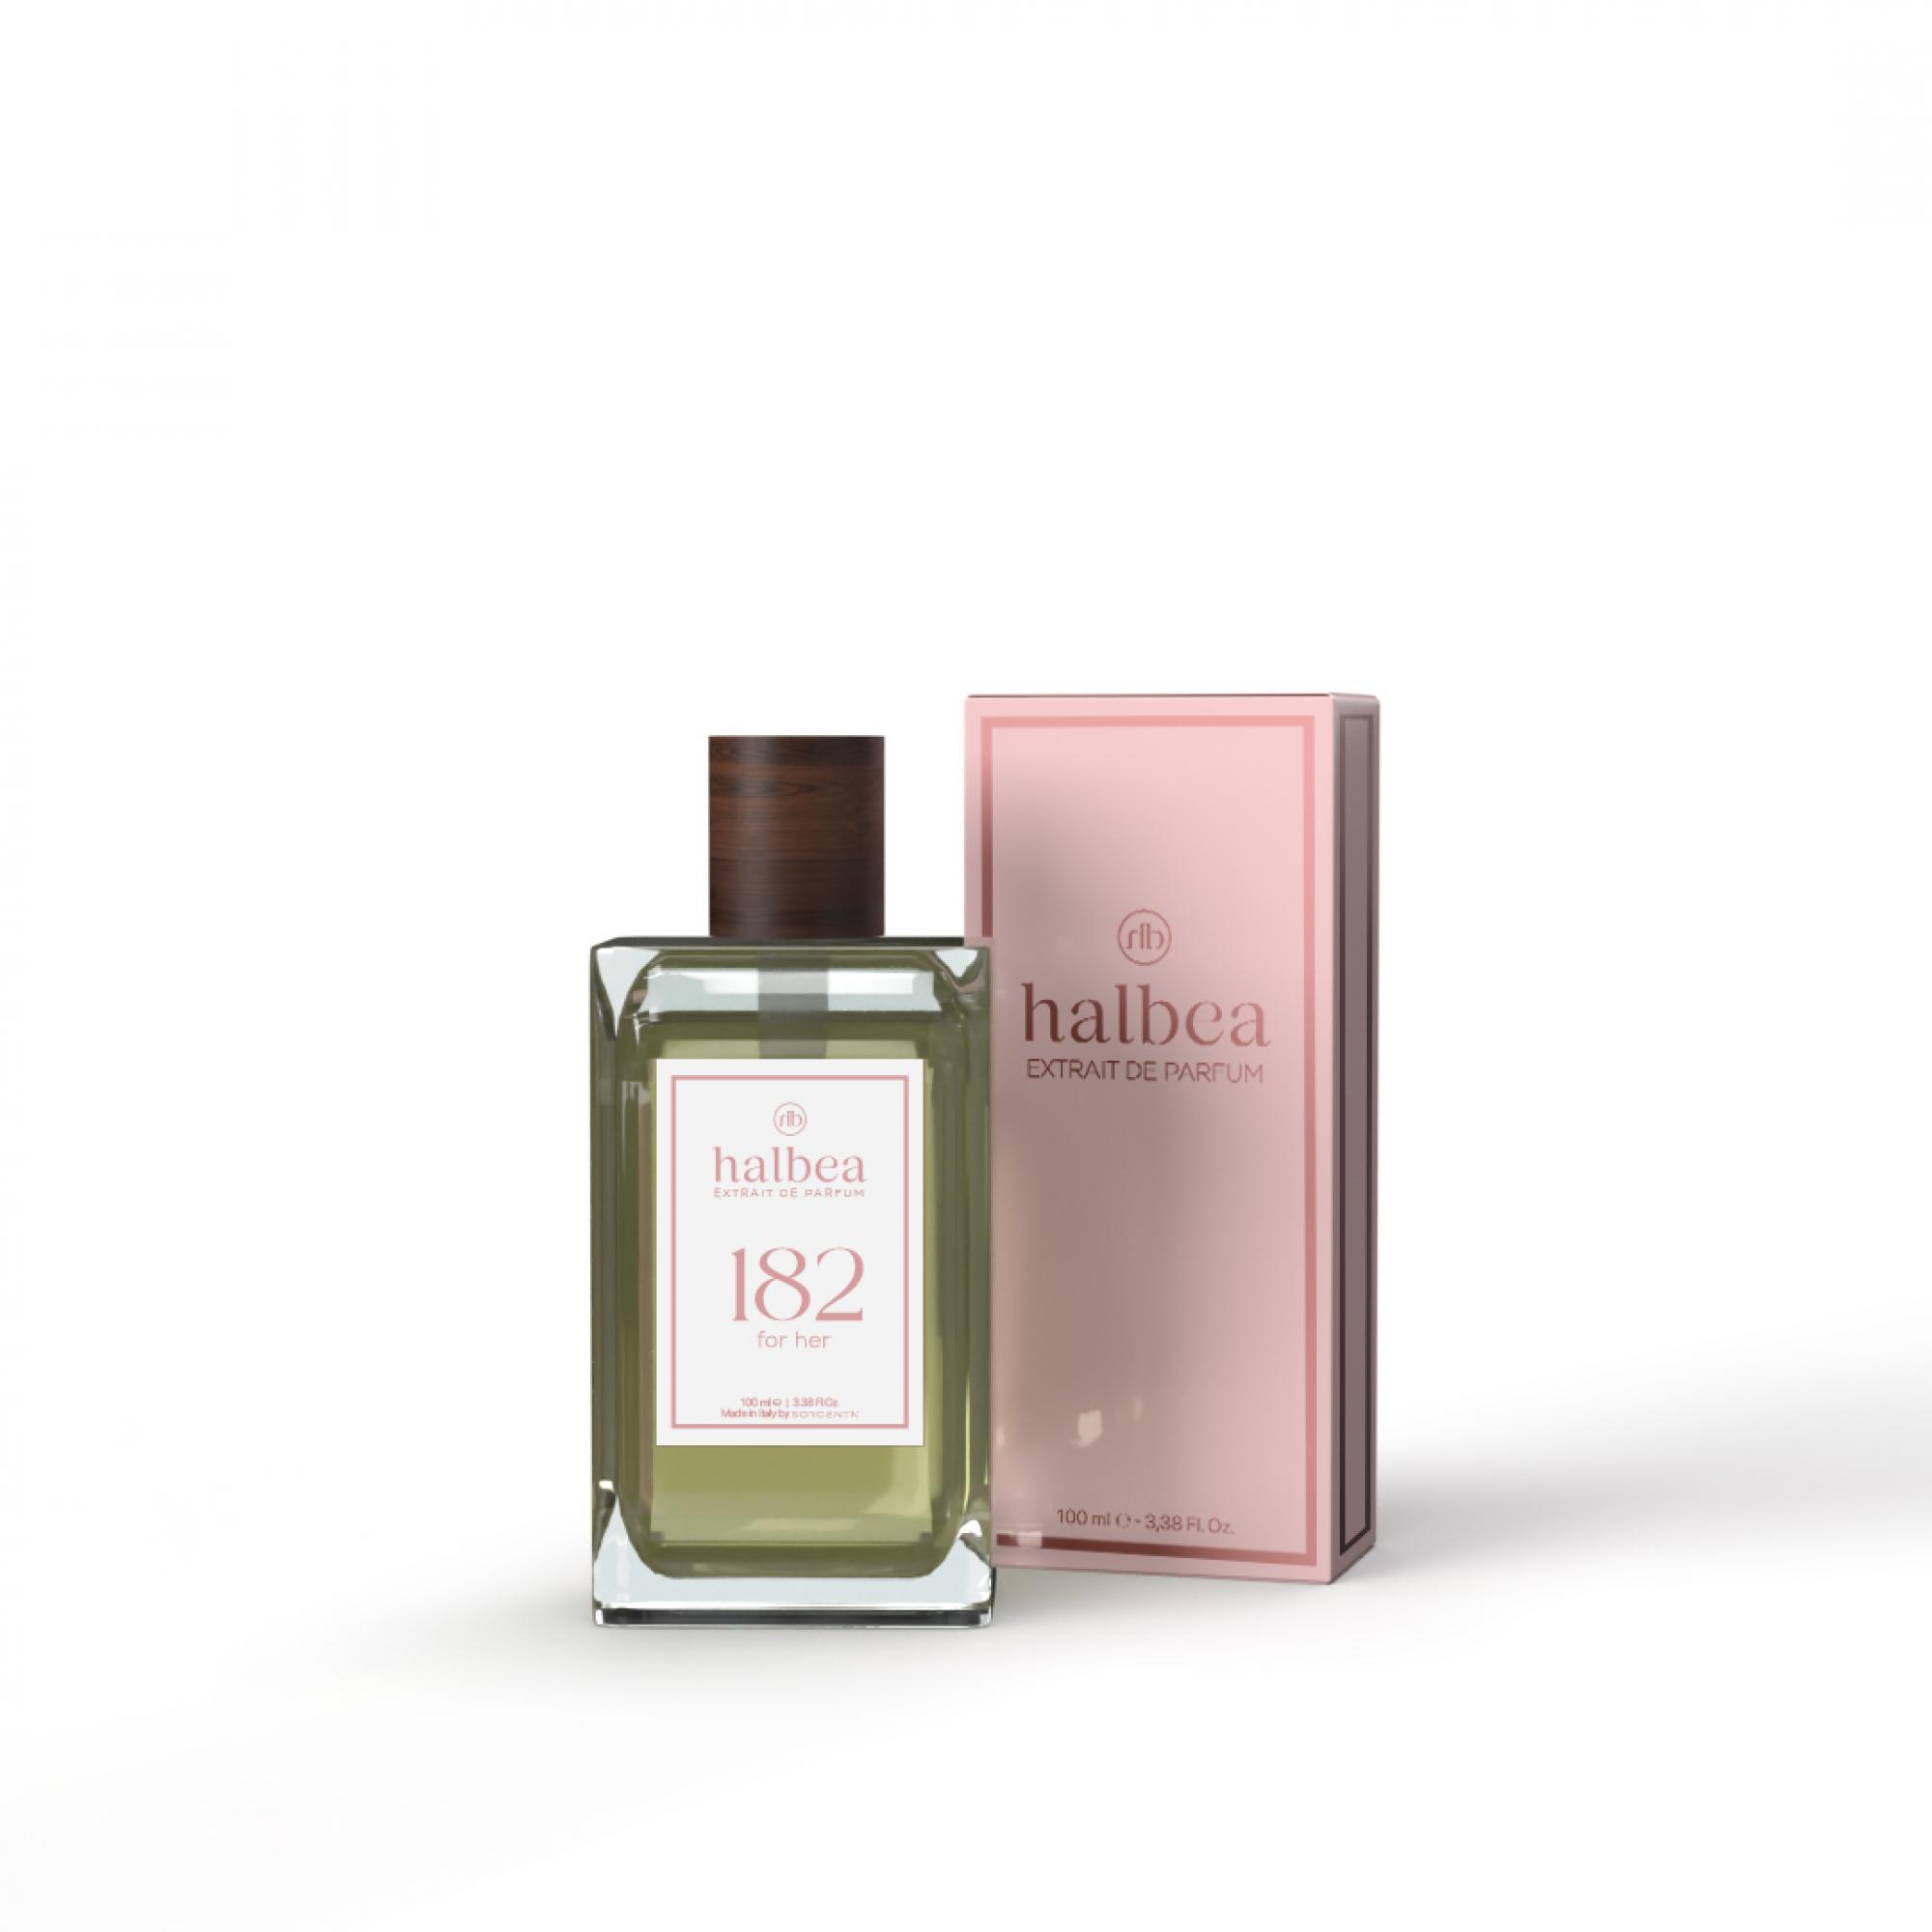 Halbea Parfum Nr. 182 insp. by Hermes Galop d'Hermès Sorgenta 100ml